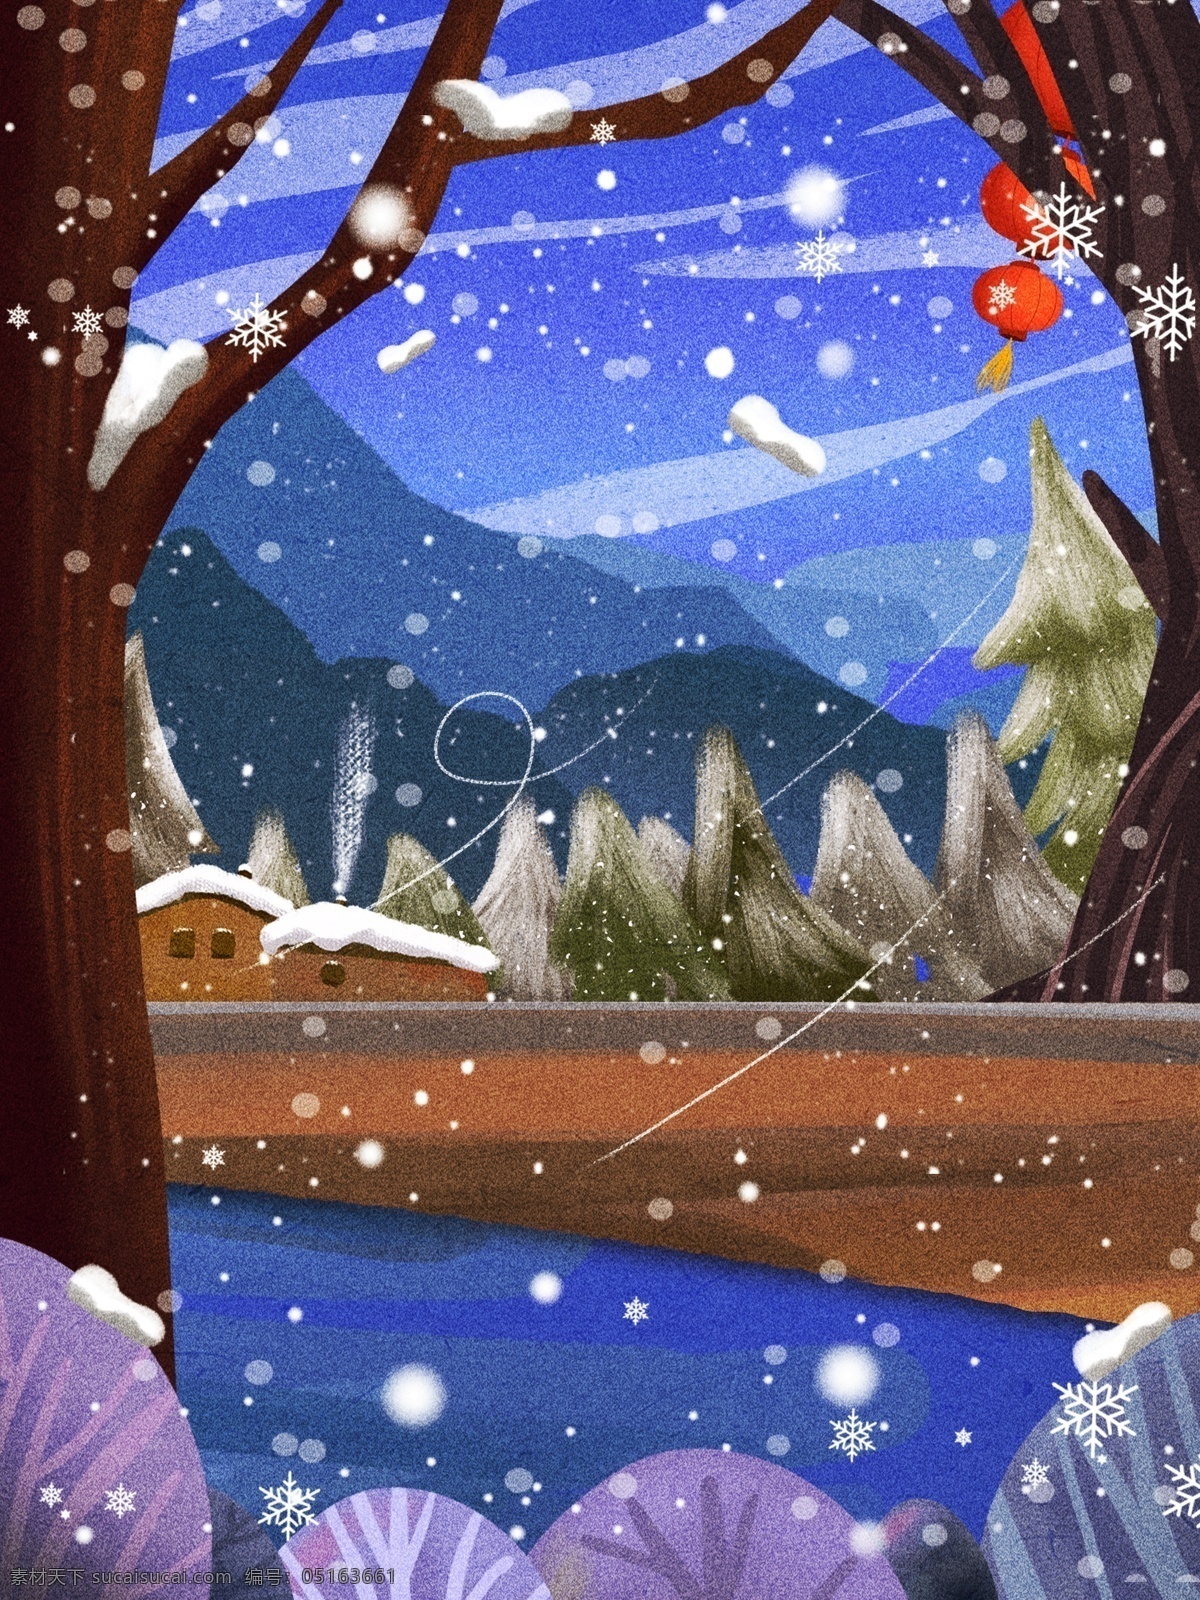 彩绘 冬季 下雪 树林 美景 背景 雪花 森林 背景图 创意 广告背景 背景设计 手绘背景 背景展板图